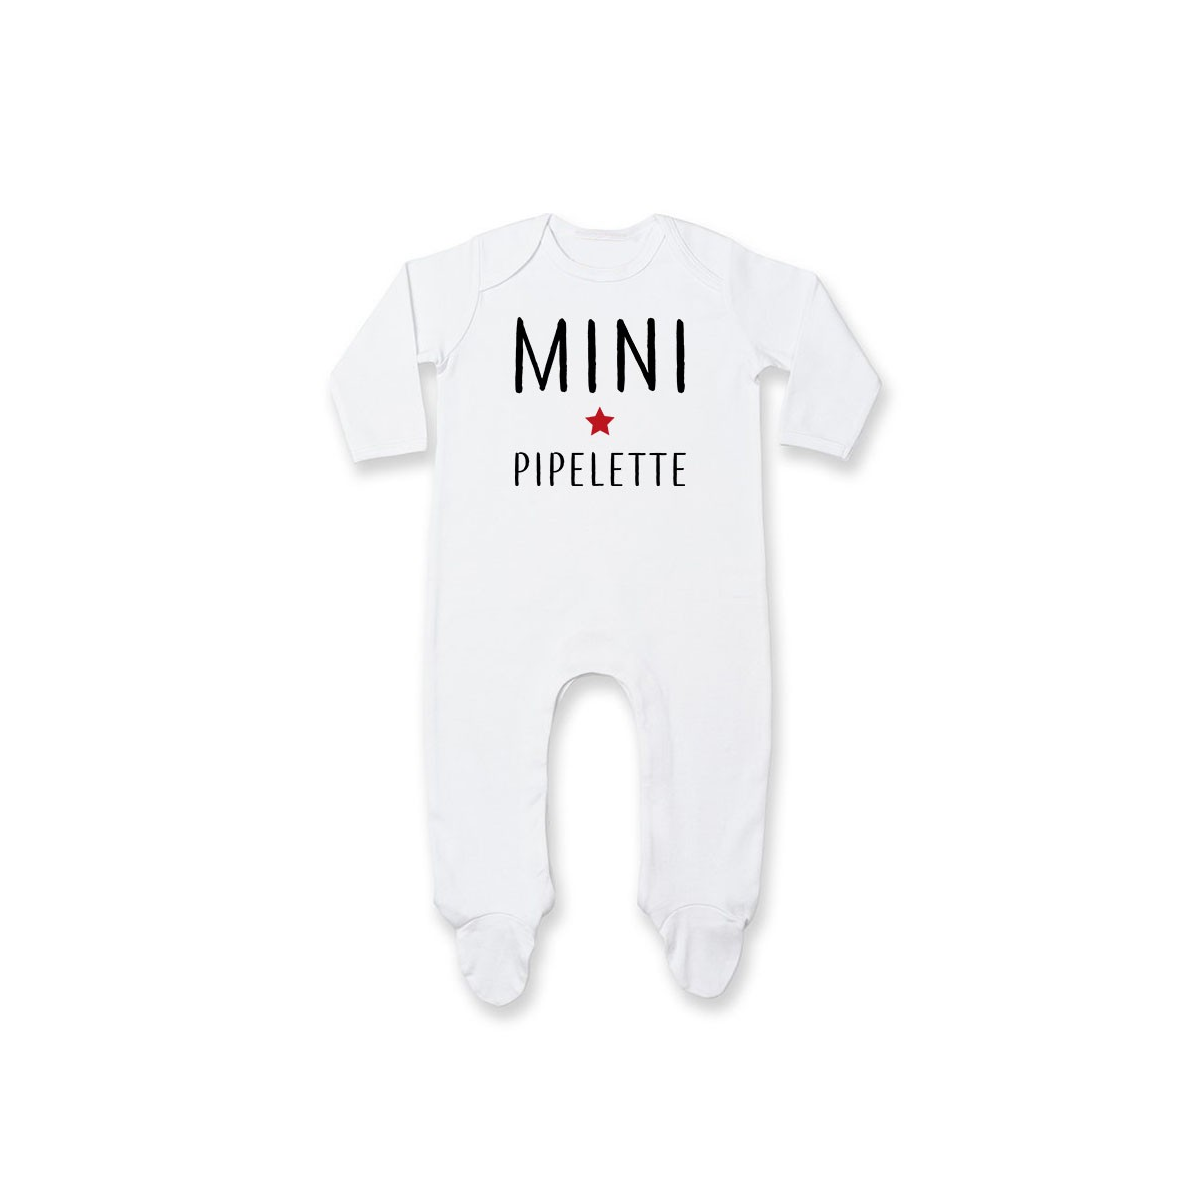 Pyjama bébé Mini pipelette